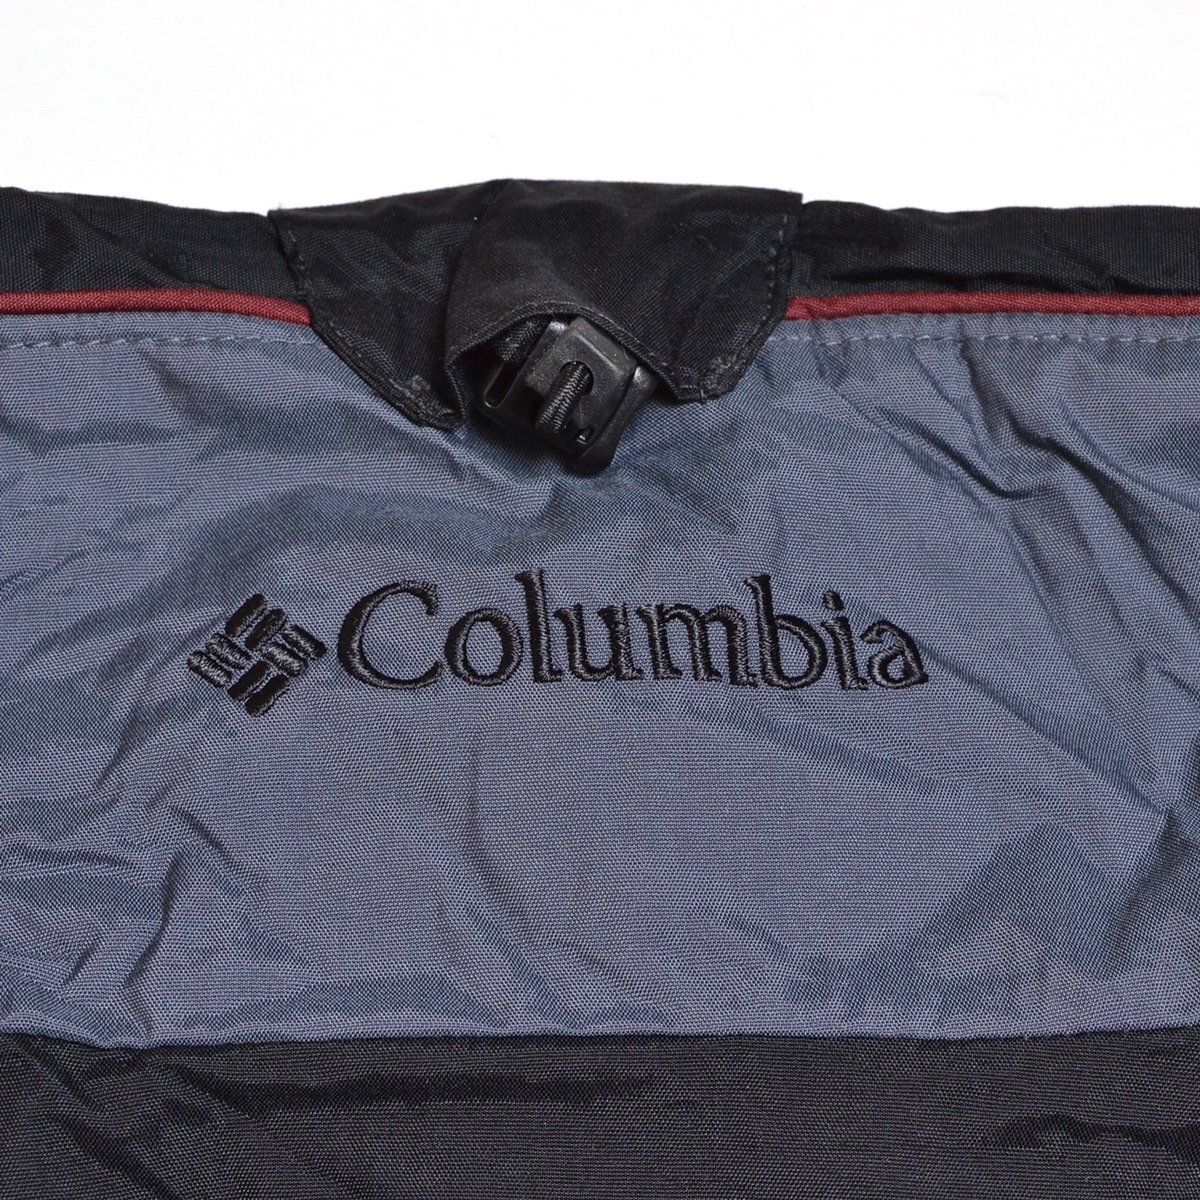 ◆500158 Columbia コロンビア ◇ウィンドジャケット マウンテンパーカー ナイロンジャケット サイズXL メンズ ブラックの画像8